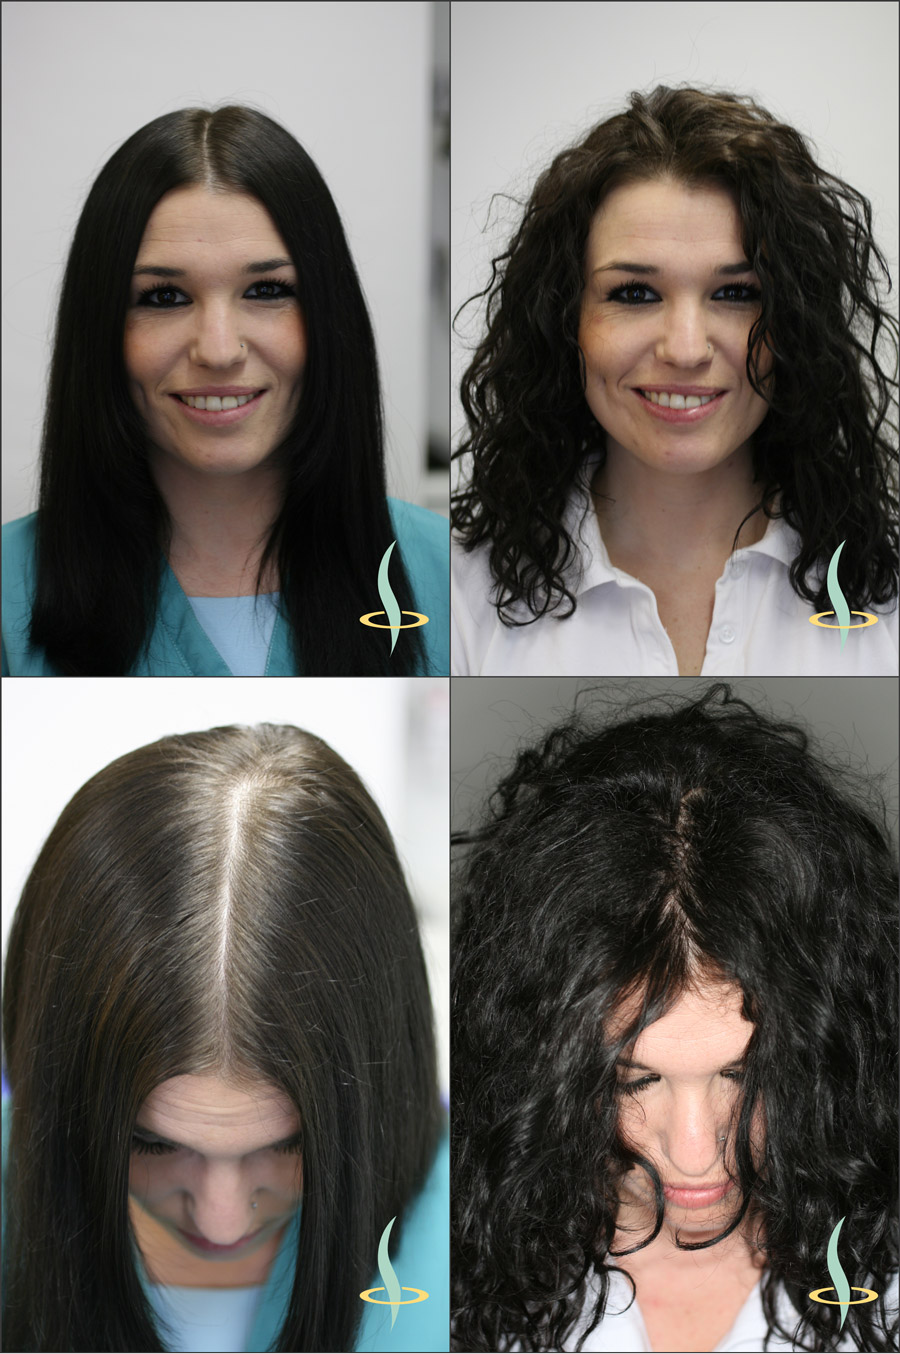 Abbildung 2: Optischer Effekt durch gerades (links) und lockiges (rechts) Haar auf die Sichtbarkeit der Kopfhaut. (Quelle: eigene Darstellung)